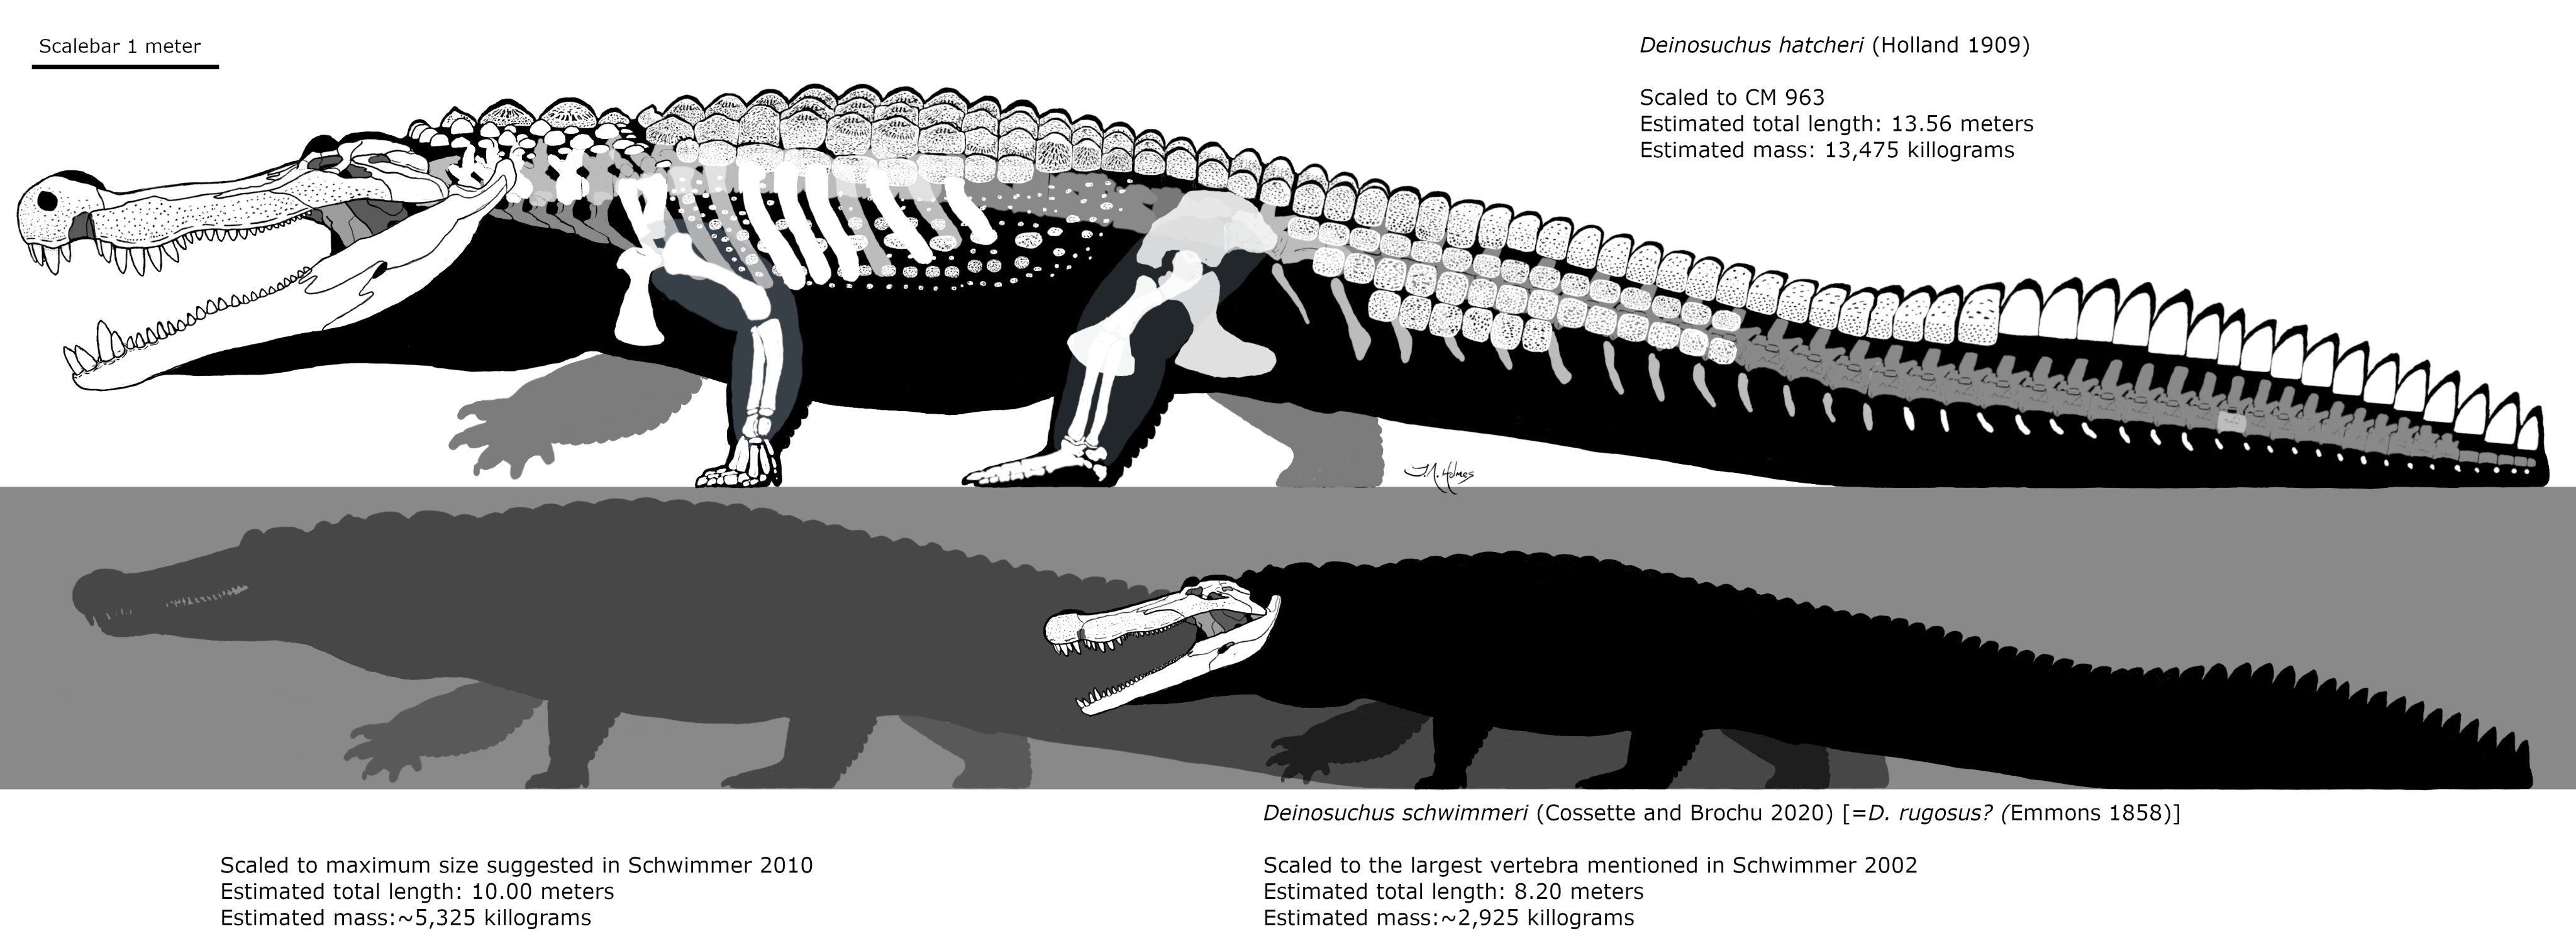 Deinosuchus – dinosauriacreatures